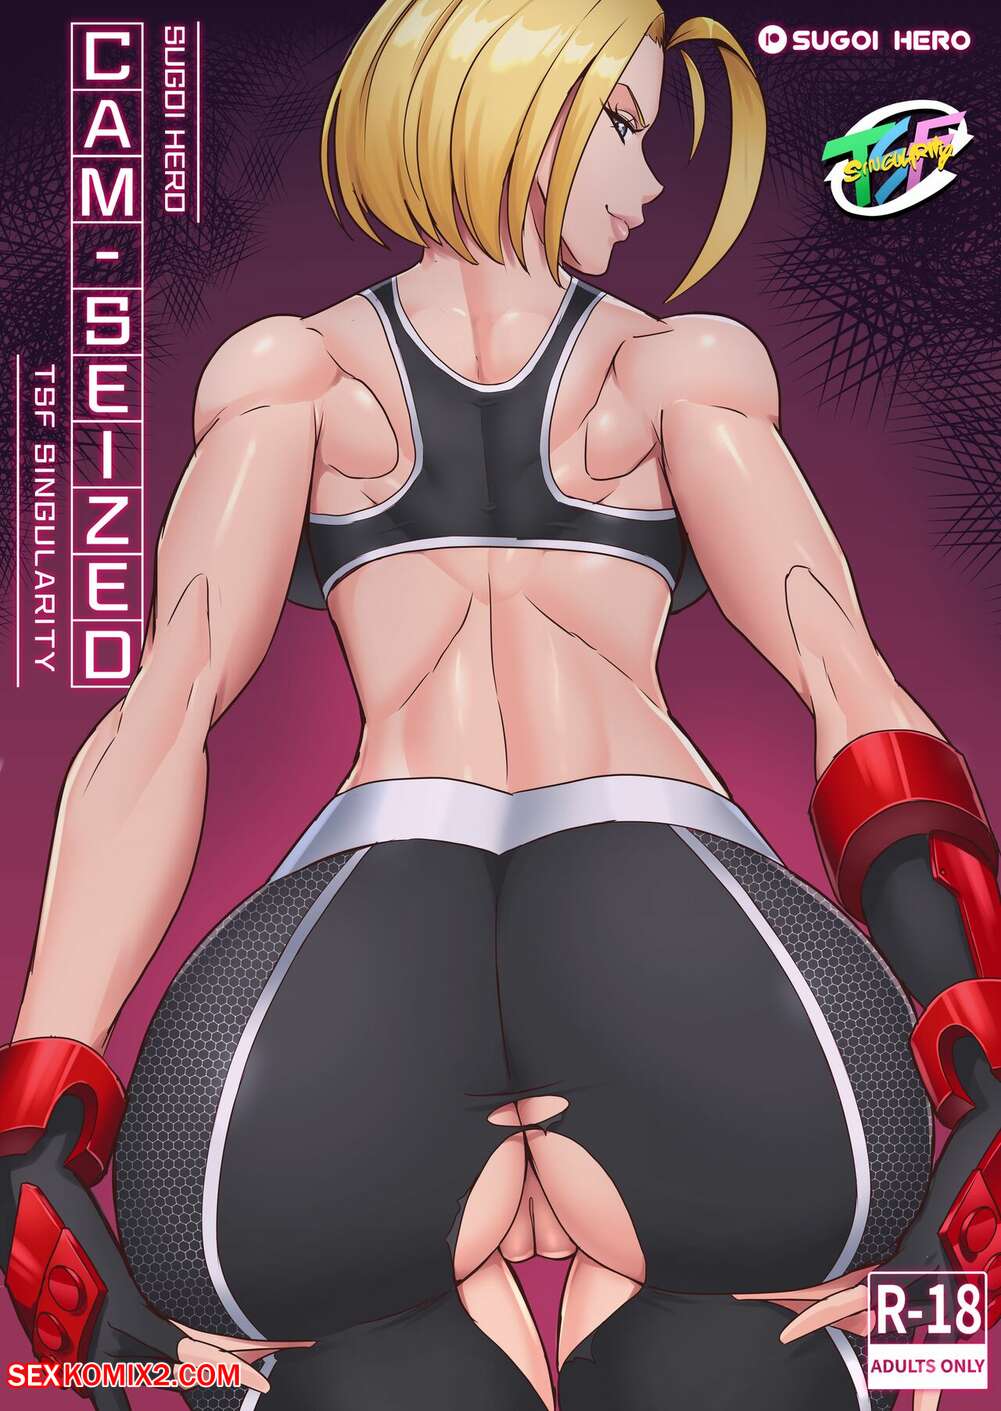 Sugoi - âœ…ï¸ Porn comic CamSeized. Street Fighter 6. Sugoi Hero. Sex comic hot sexy  babes | Porn comics in English for adults only | sexkomix2.com